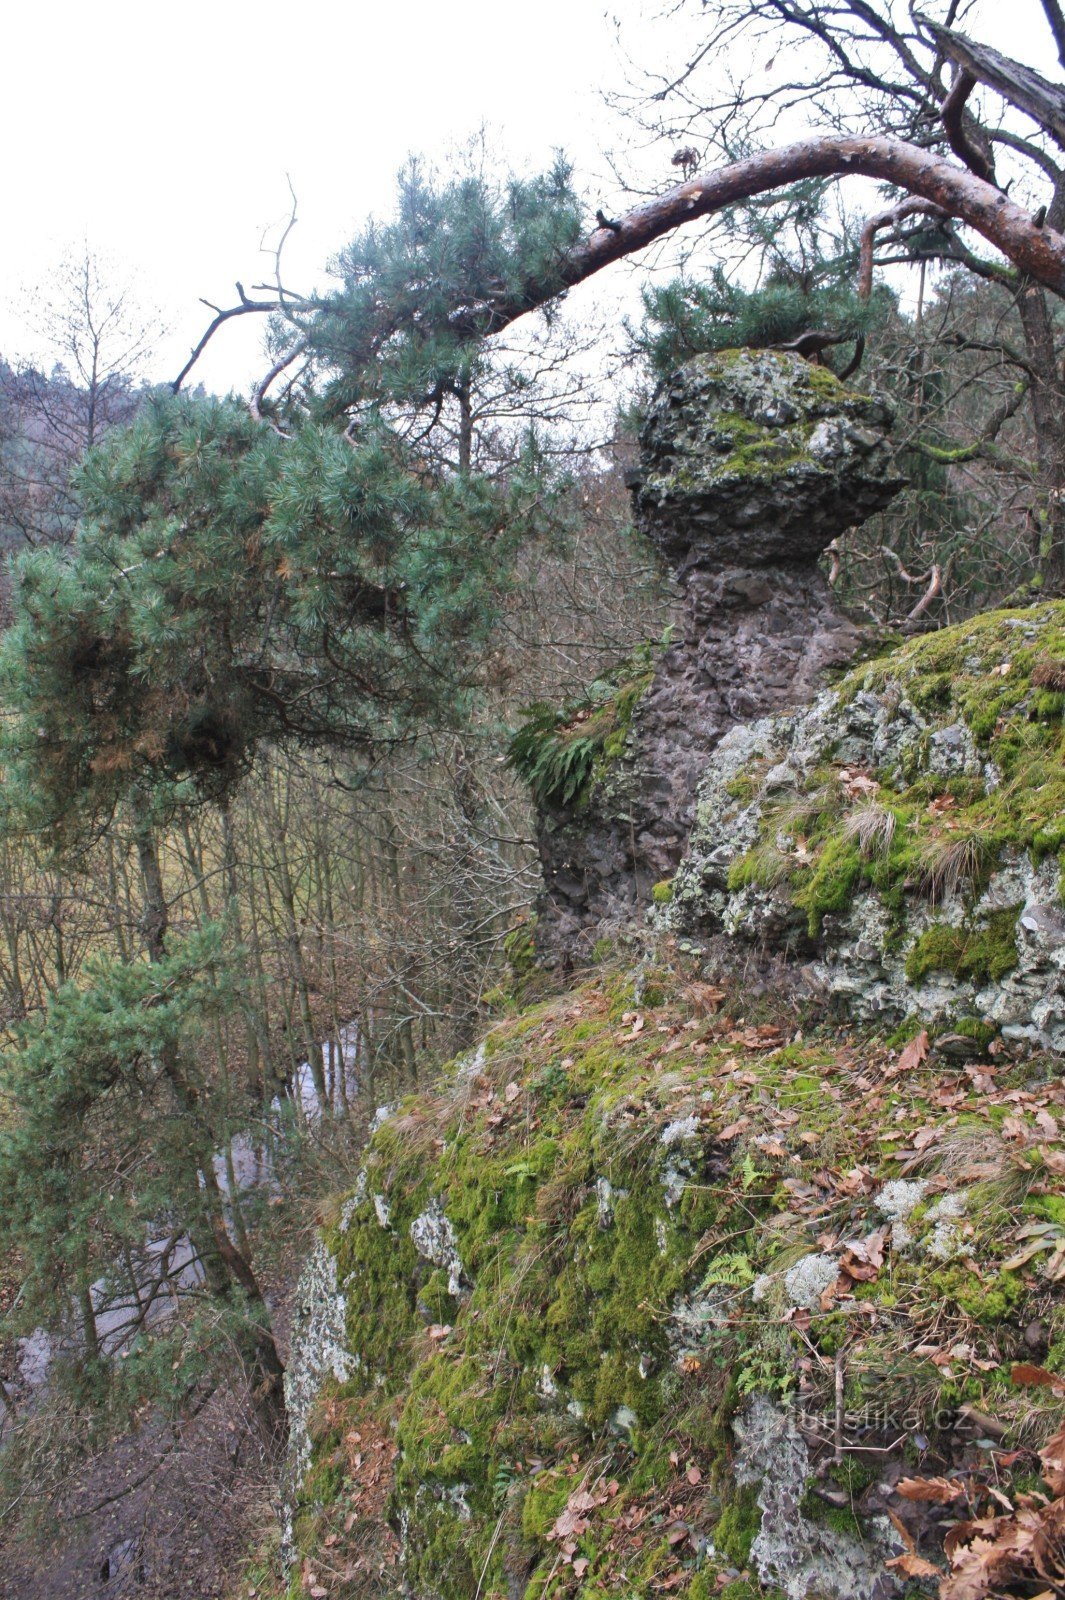 Krkatá baba est situé au sommet des rochers au-dessus du ruisseau Lubě